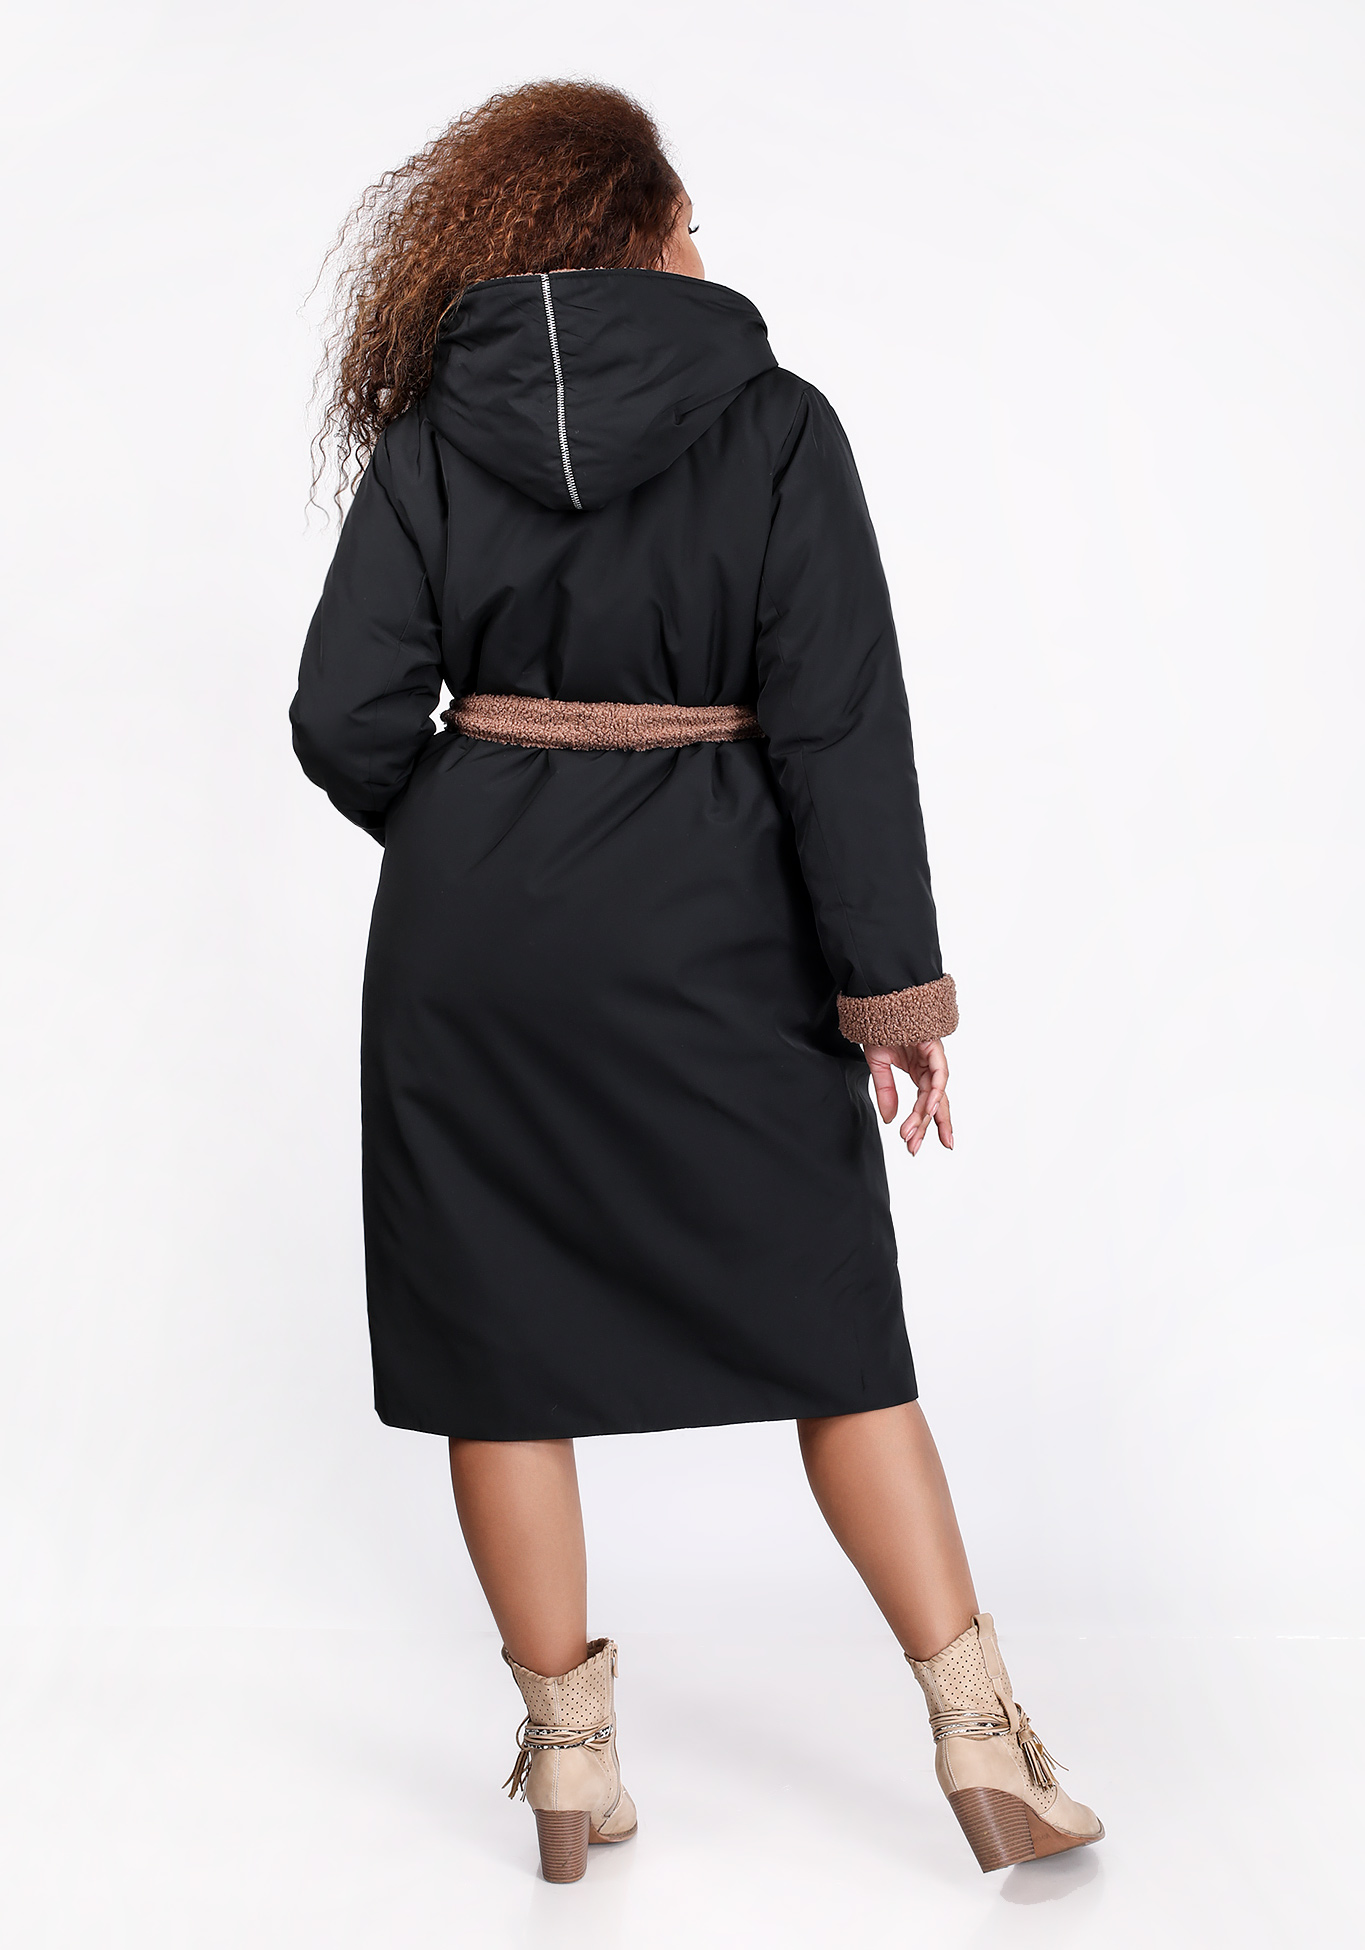 Пальто женское из болоньевой ткани Julia Weber, размер 56, цвет мокко - фото 3